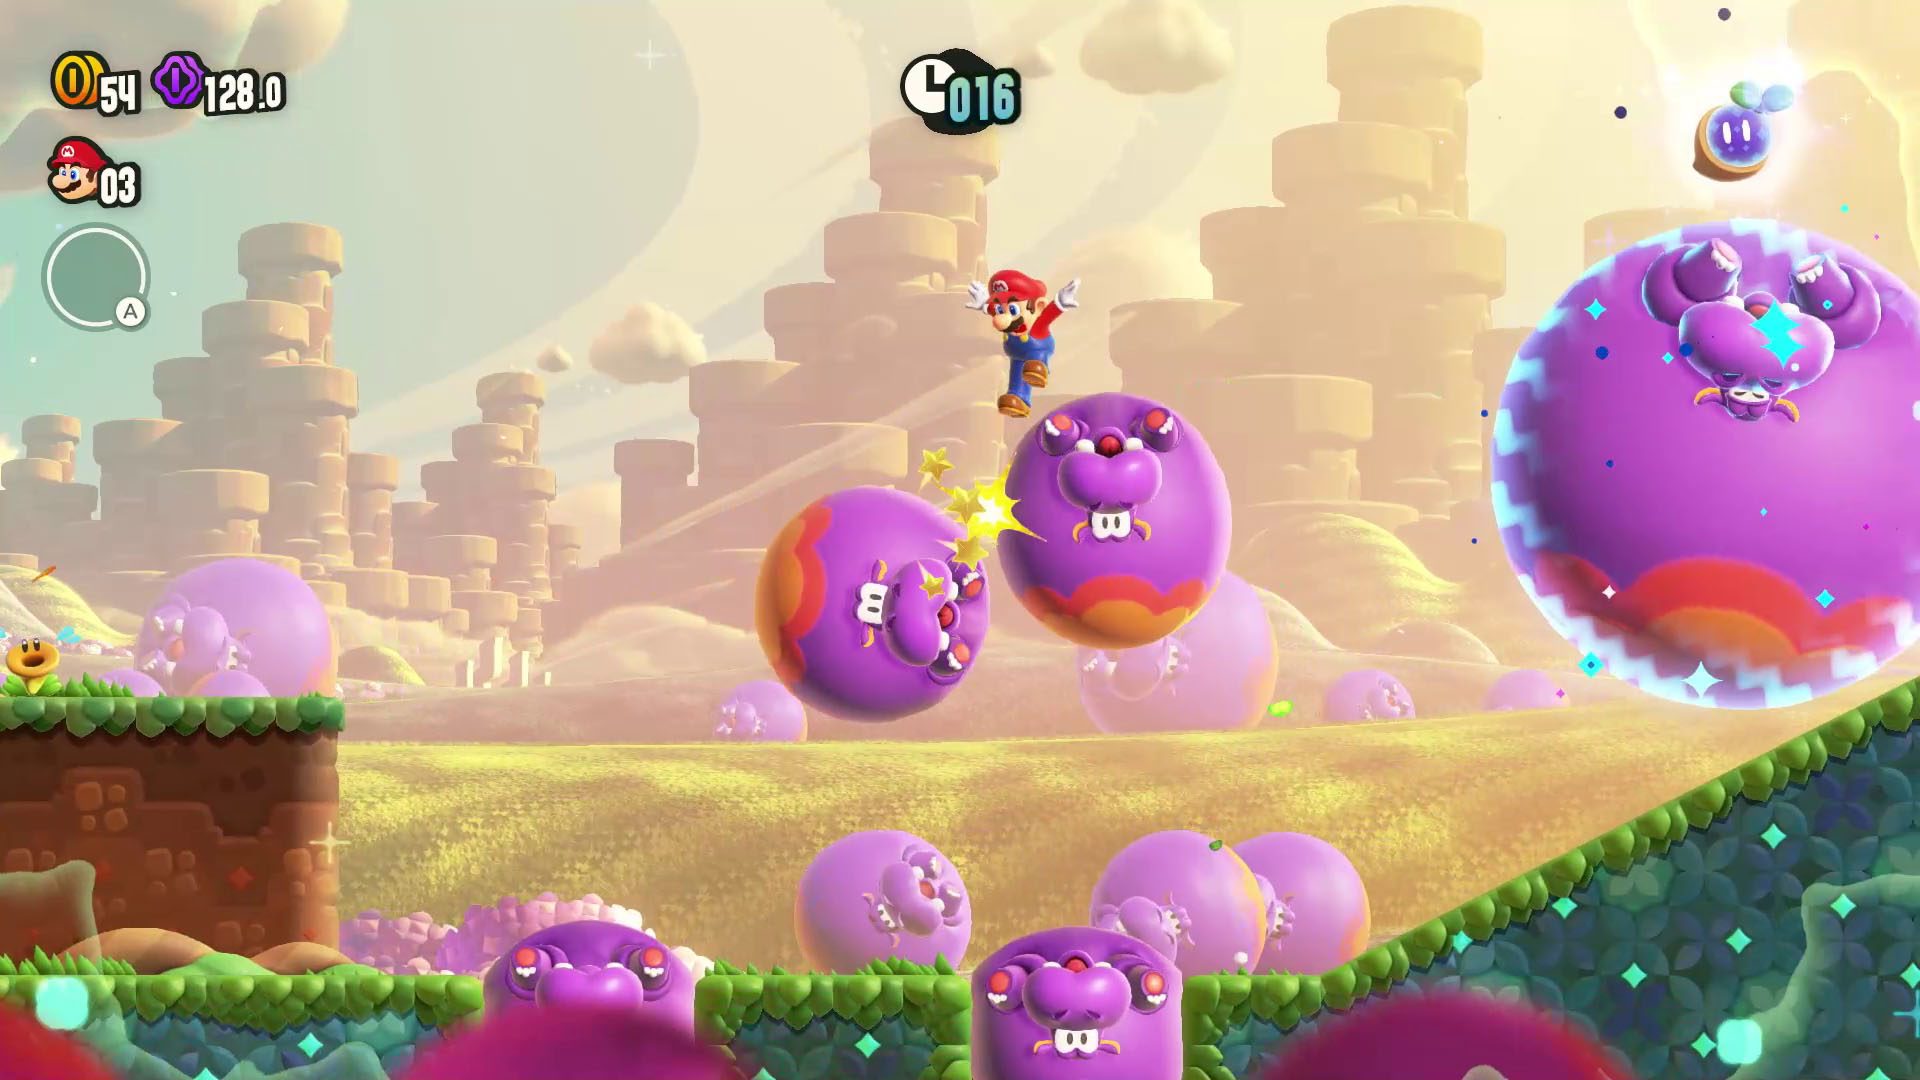 Jogos disponíveis no Switch para jogar com Super Mario Bros. Wonder -  Nintendo Blast